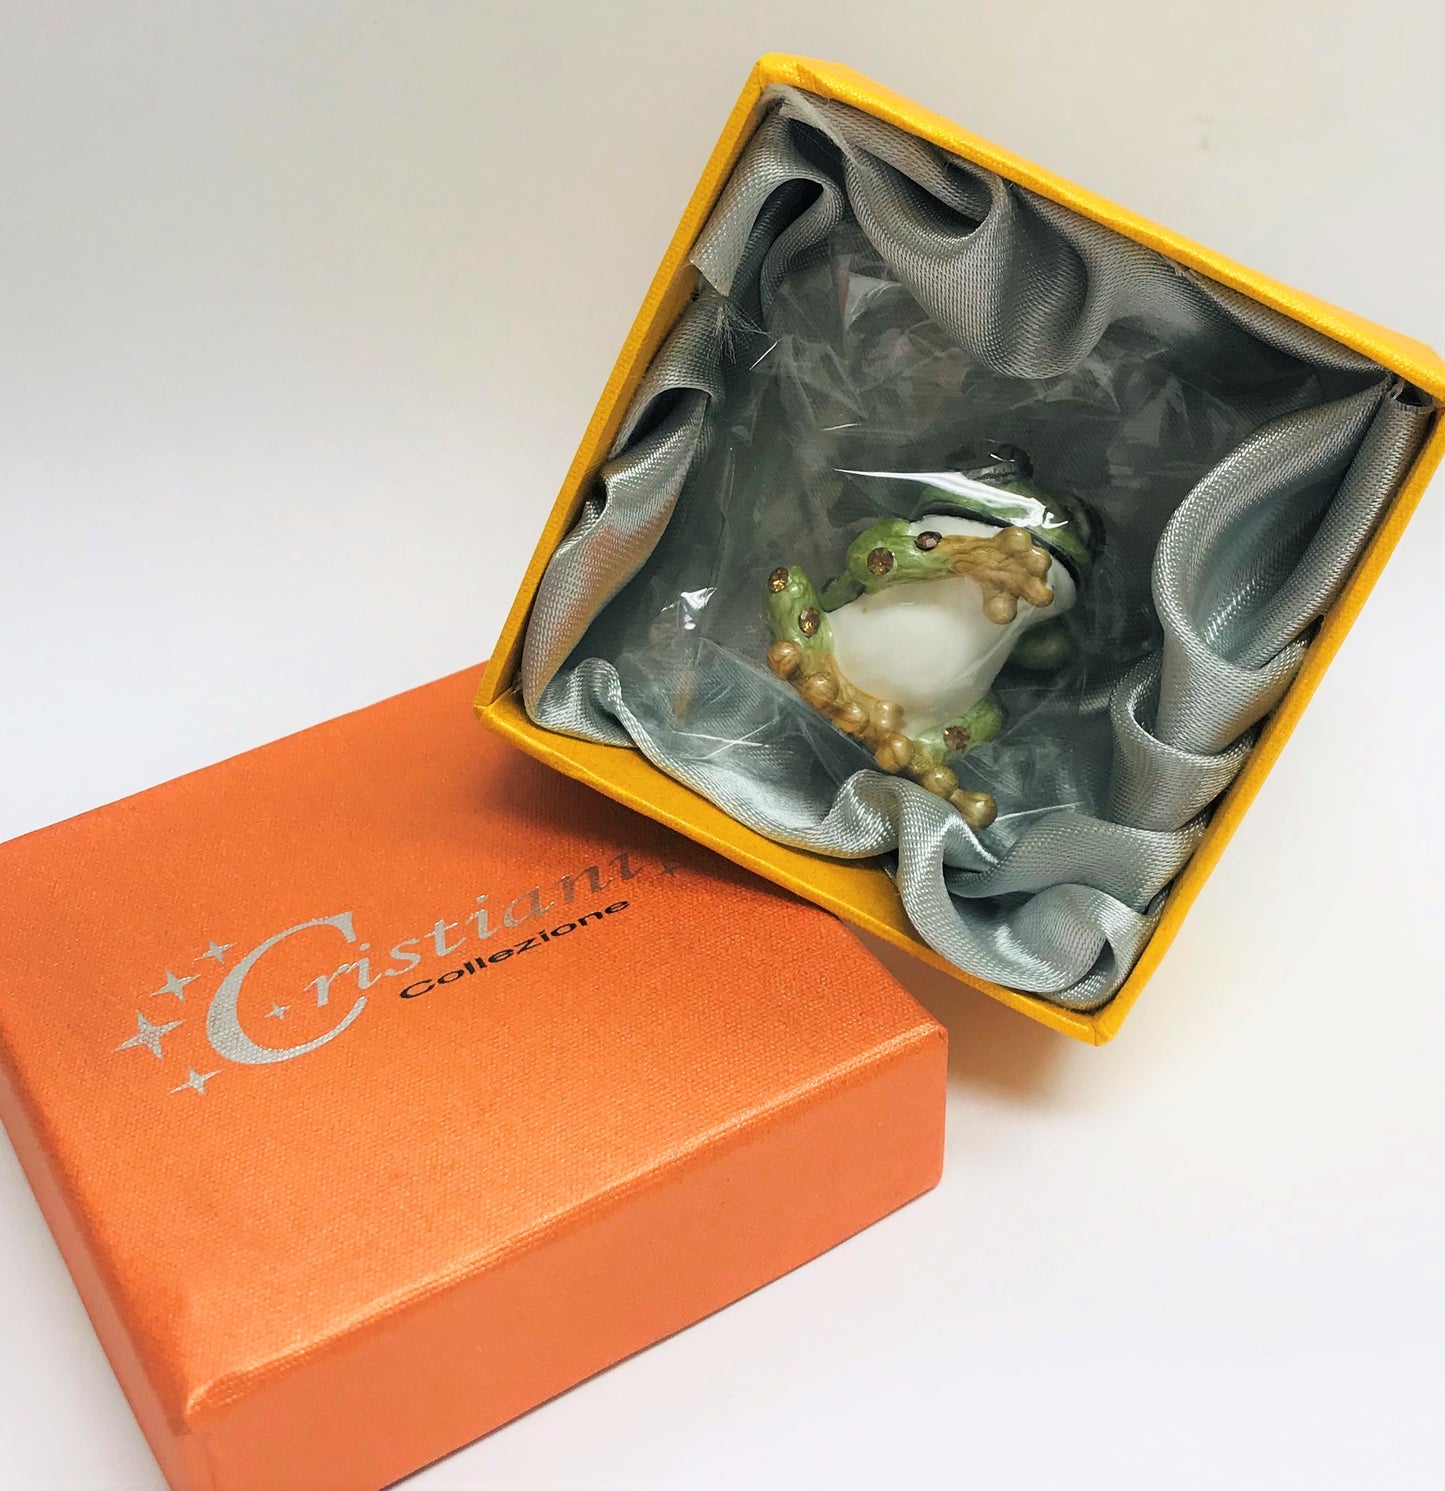 Cristiani Collezione Gecko Frog Trinket Box.